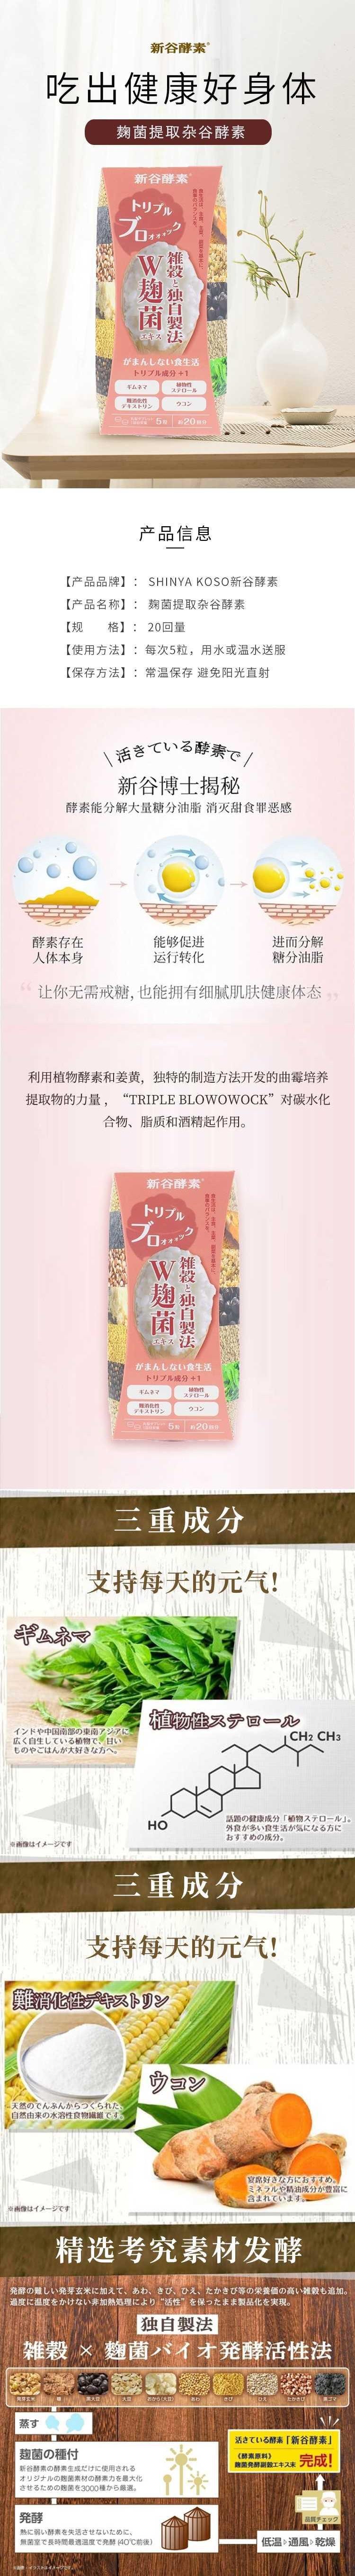 【日本直效郵件】SHINYA KOSO新谷酵素 麴菌萃取雜谷酵素100粒 增加飽足感幫助脂肪燃燒